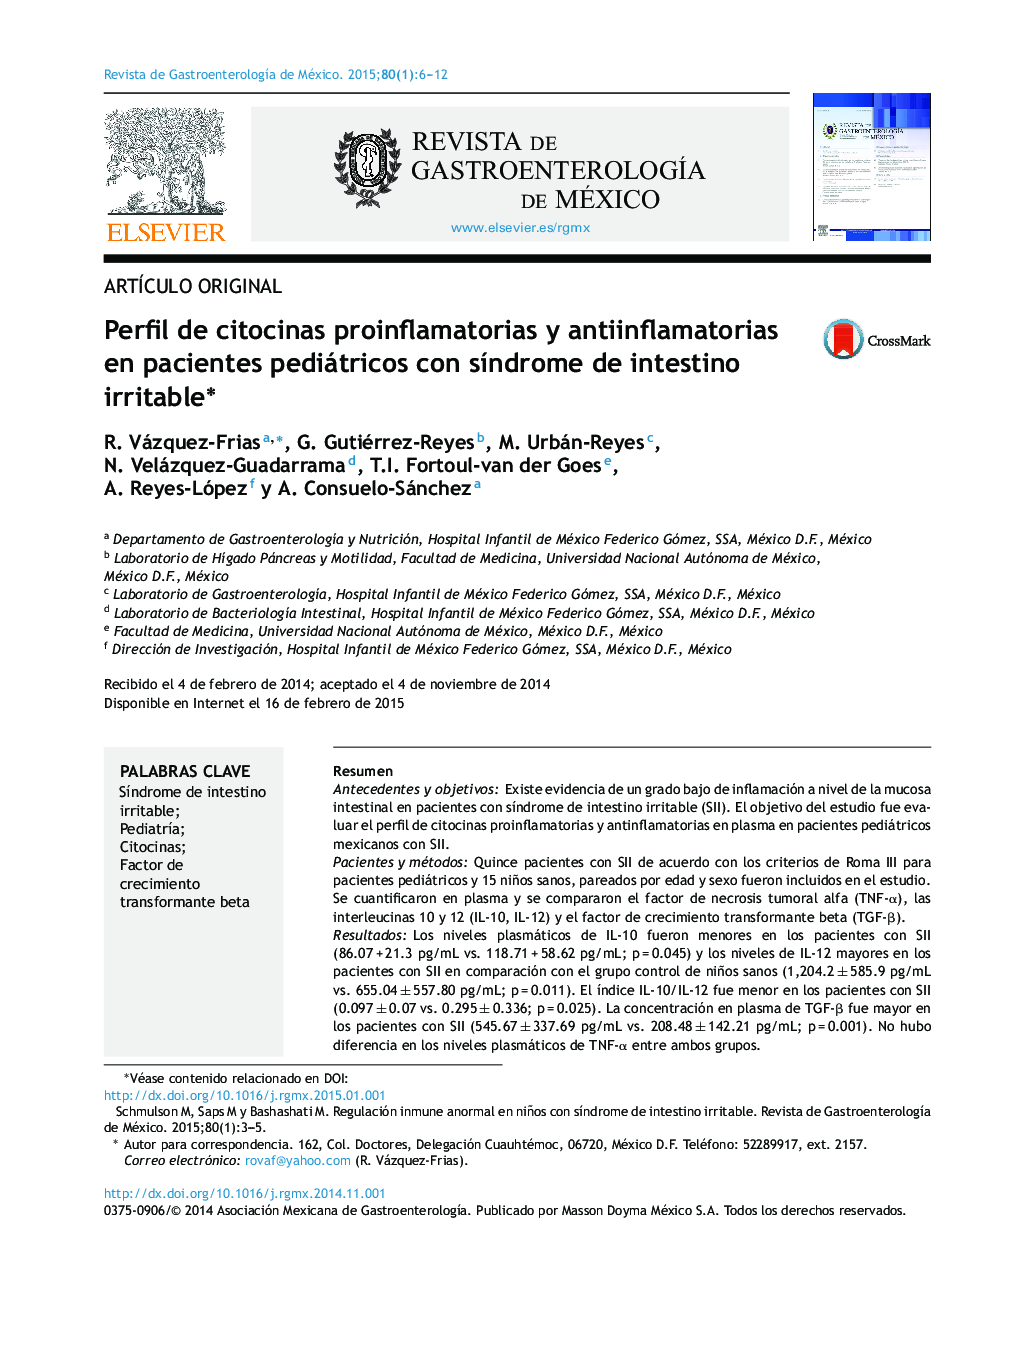 Perfil de citocinas proinflamatorias y antiinflamatorias en pacientes pediátricos con síndrome de intestino irritable 